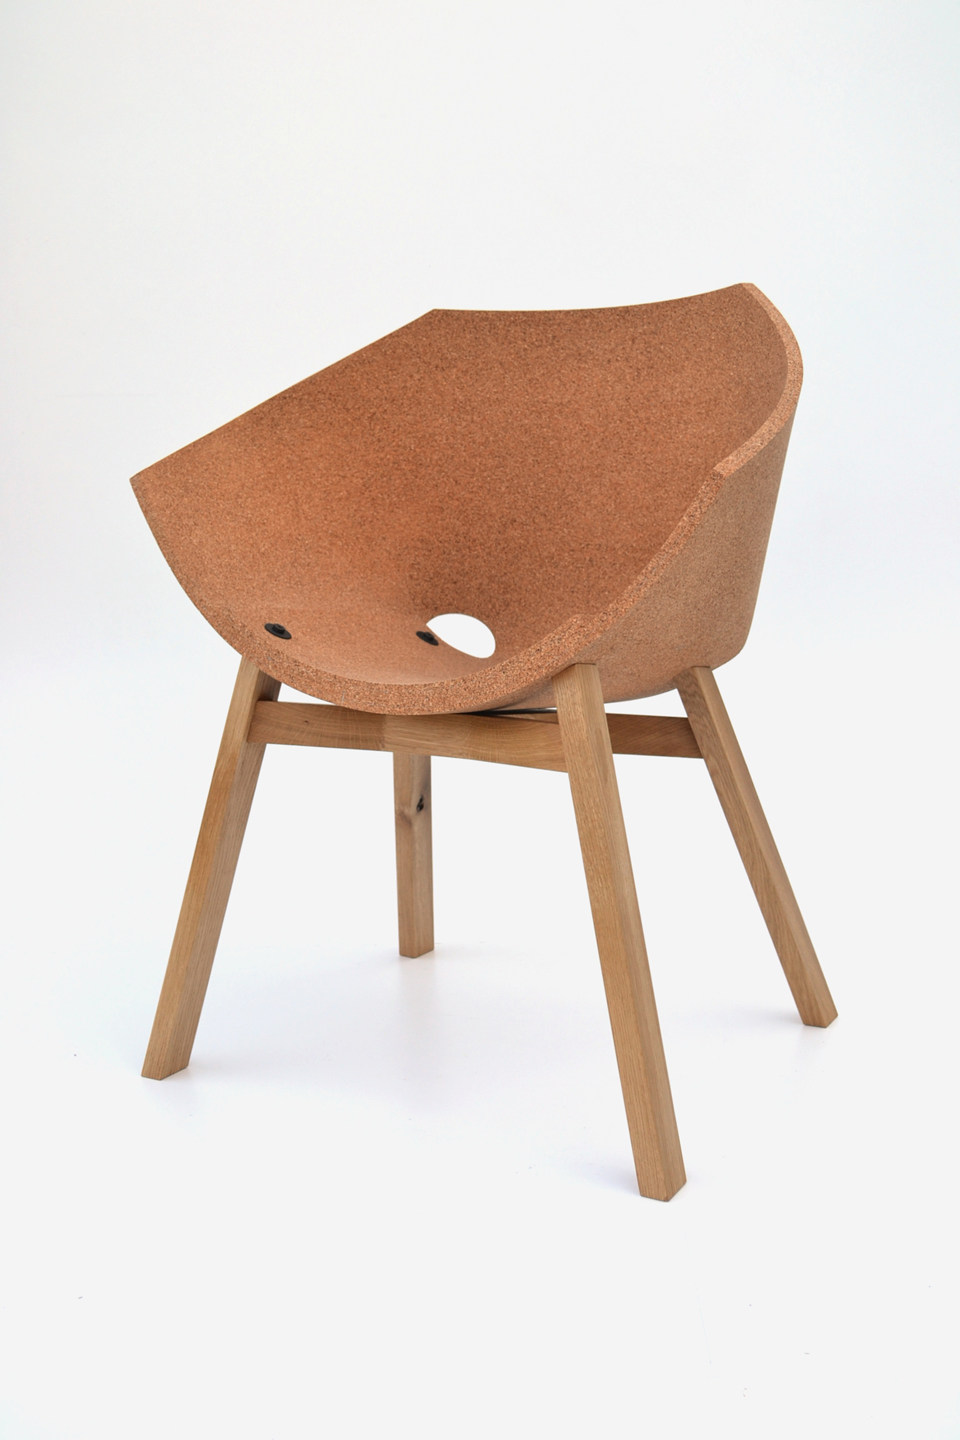 corkigami-chair-by-carlos-ortega-design-2.jpg